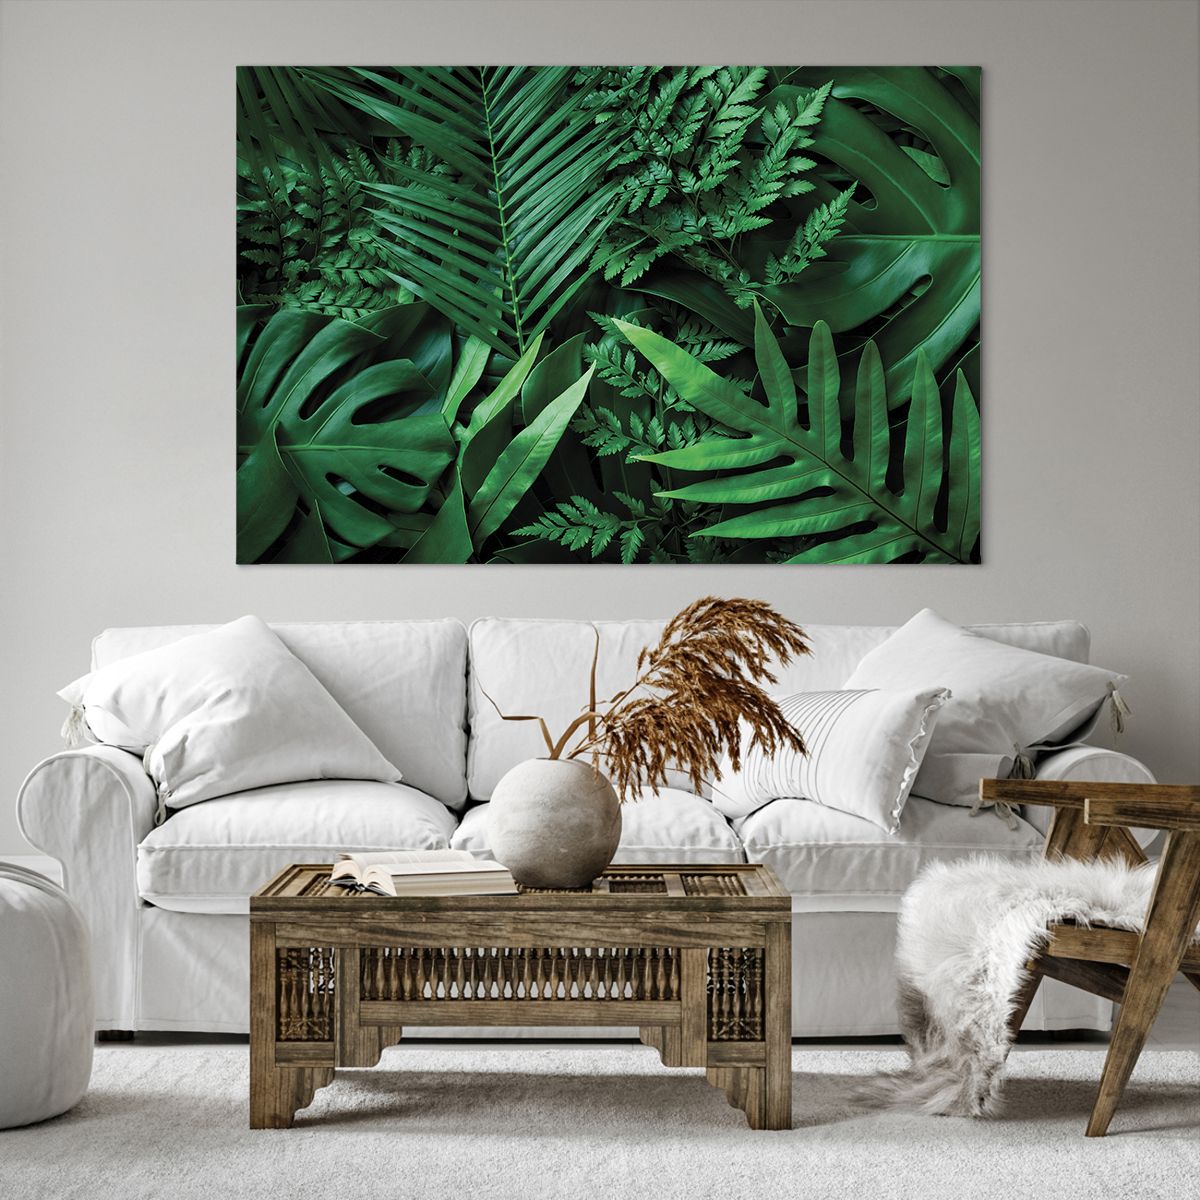 Bild auf Leinwand Exotische Pflanze, Bild auf Leinwand Palmblatt, Bild auf Leinwand Monstera-Blatt, Bild auf Leinwand Natur, Bild auf Leinwand Tropen